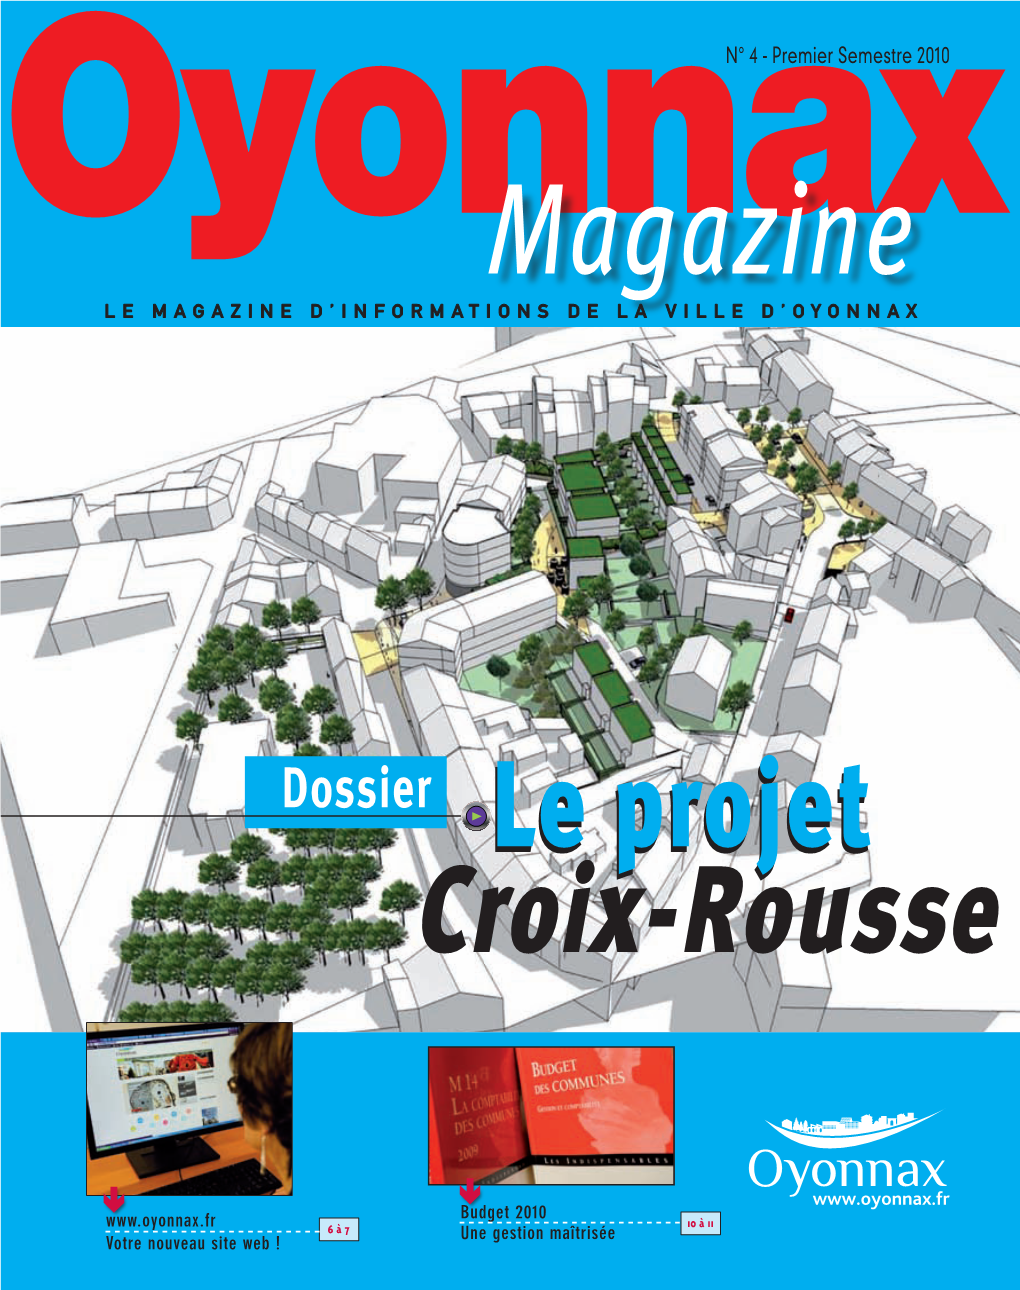 Oyonnax Magazine, Le Magazine D’Informations De La Ville D’Oyonnax